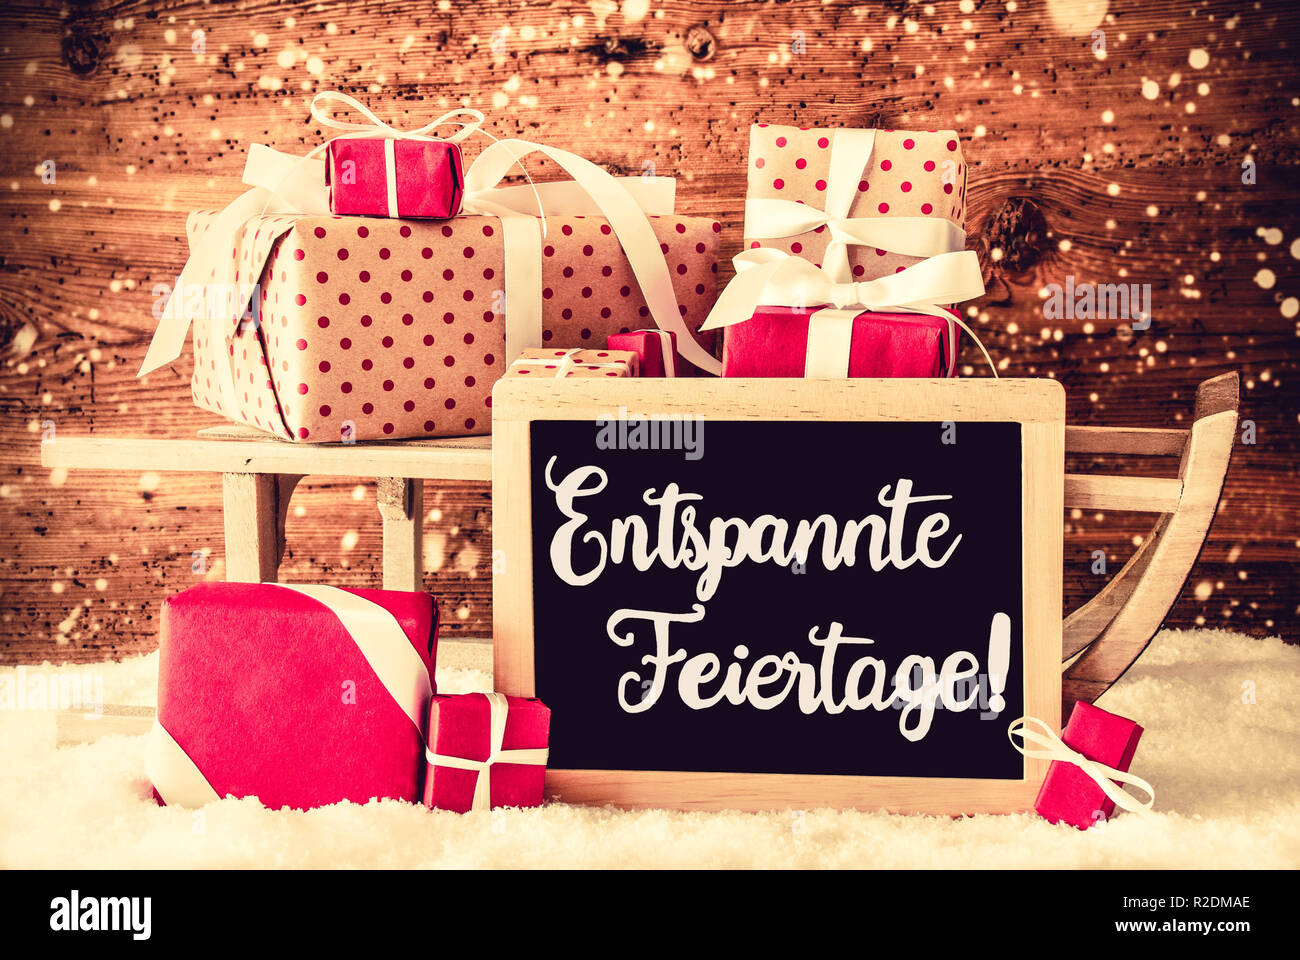 El trineo con regalos, Caligrafía Entspannte Feiertage significa ¡Feliz Navidad! Foto de stock